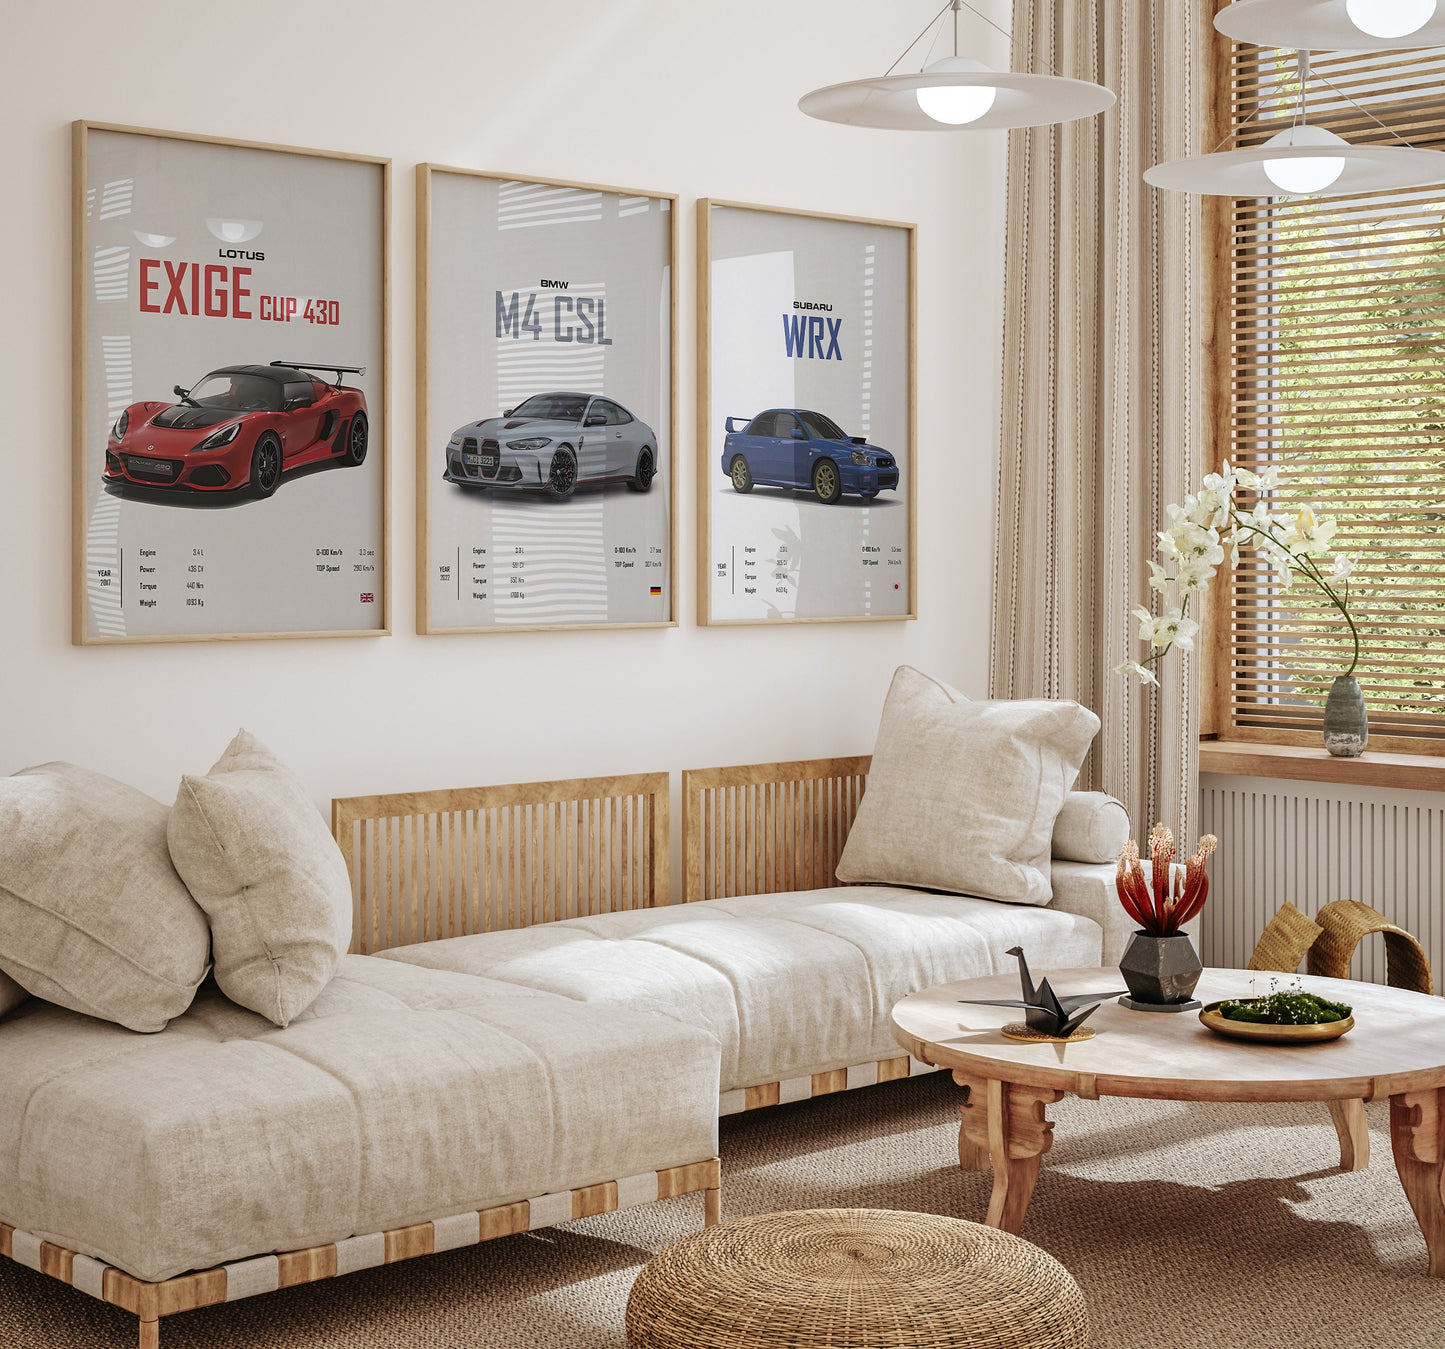 Poster Sportwagen  BMW LOTUS SUBARU Klassiker Legenden I Geschenk für ihn I Wohnzimmmer & Büro I Wand Deko I Print ohne Rahmen